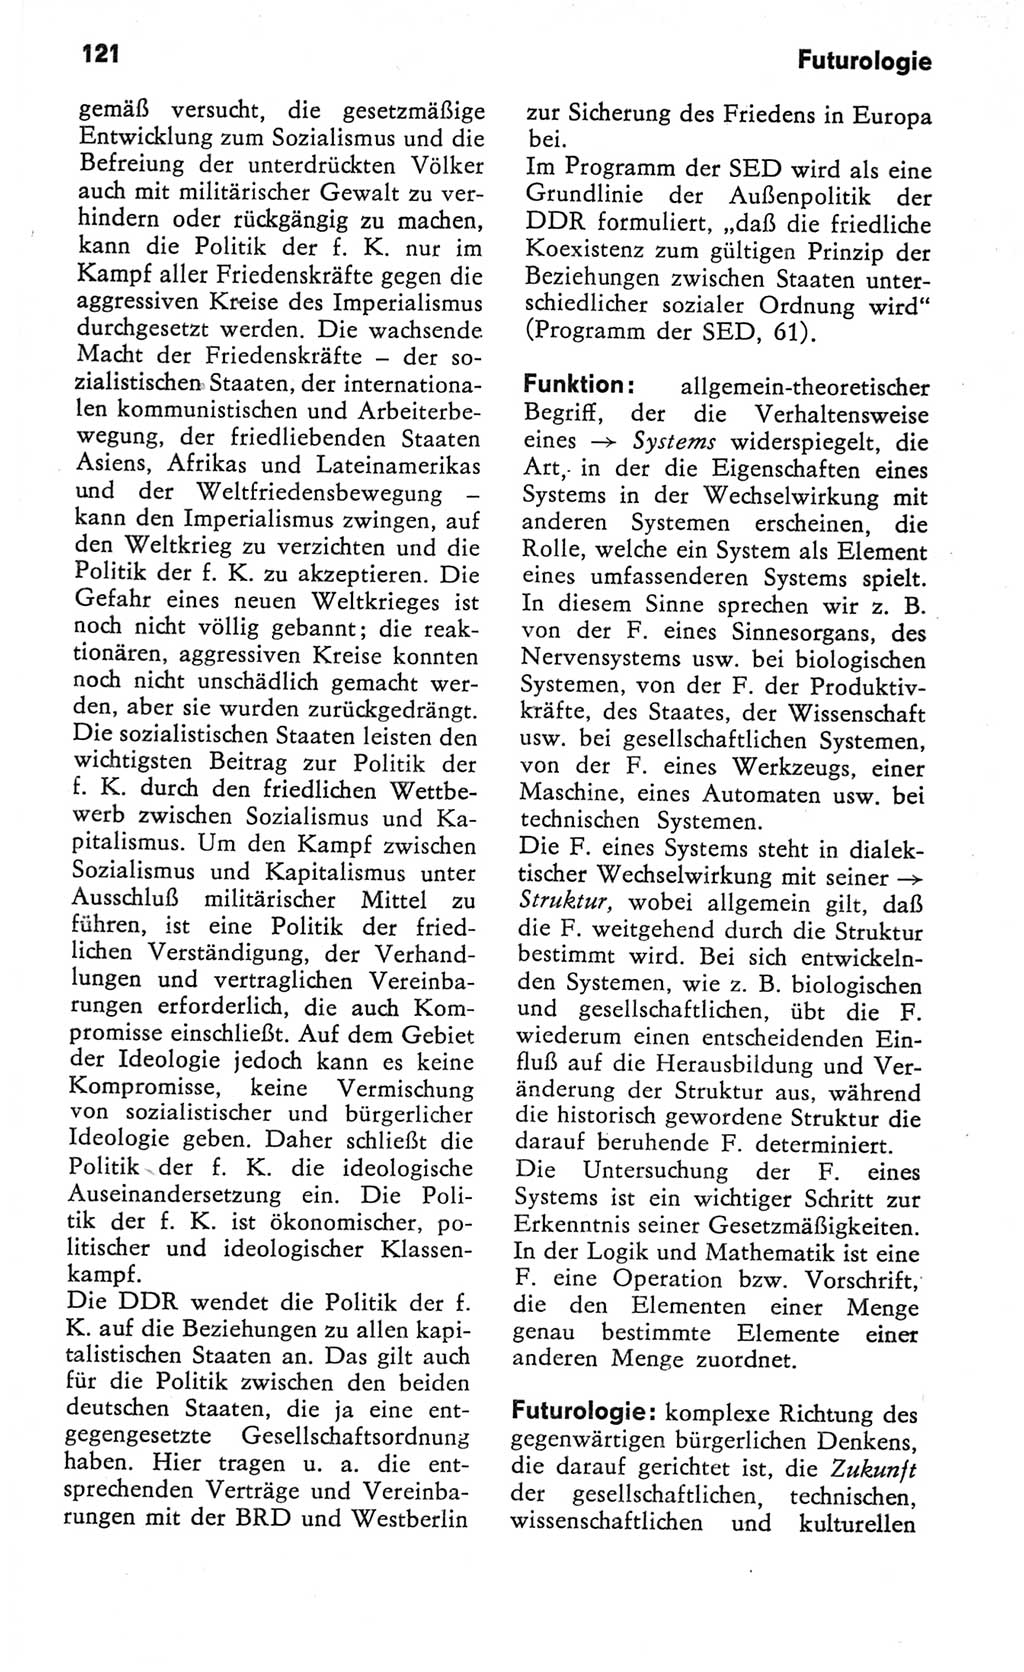 Kleines Wörterbuch der marxistisch-leninistischen Philosophie [Deutsche Demokratische Republik (DDR)] 1982, Seite 121 (Kl. Wb. ML Phil. DDR 1982, S. 121)